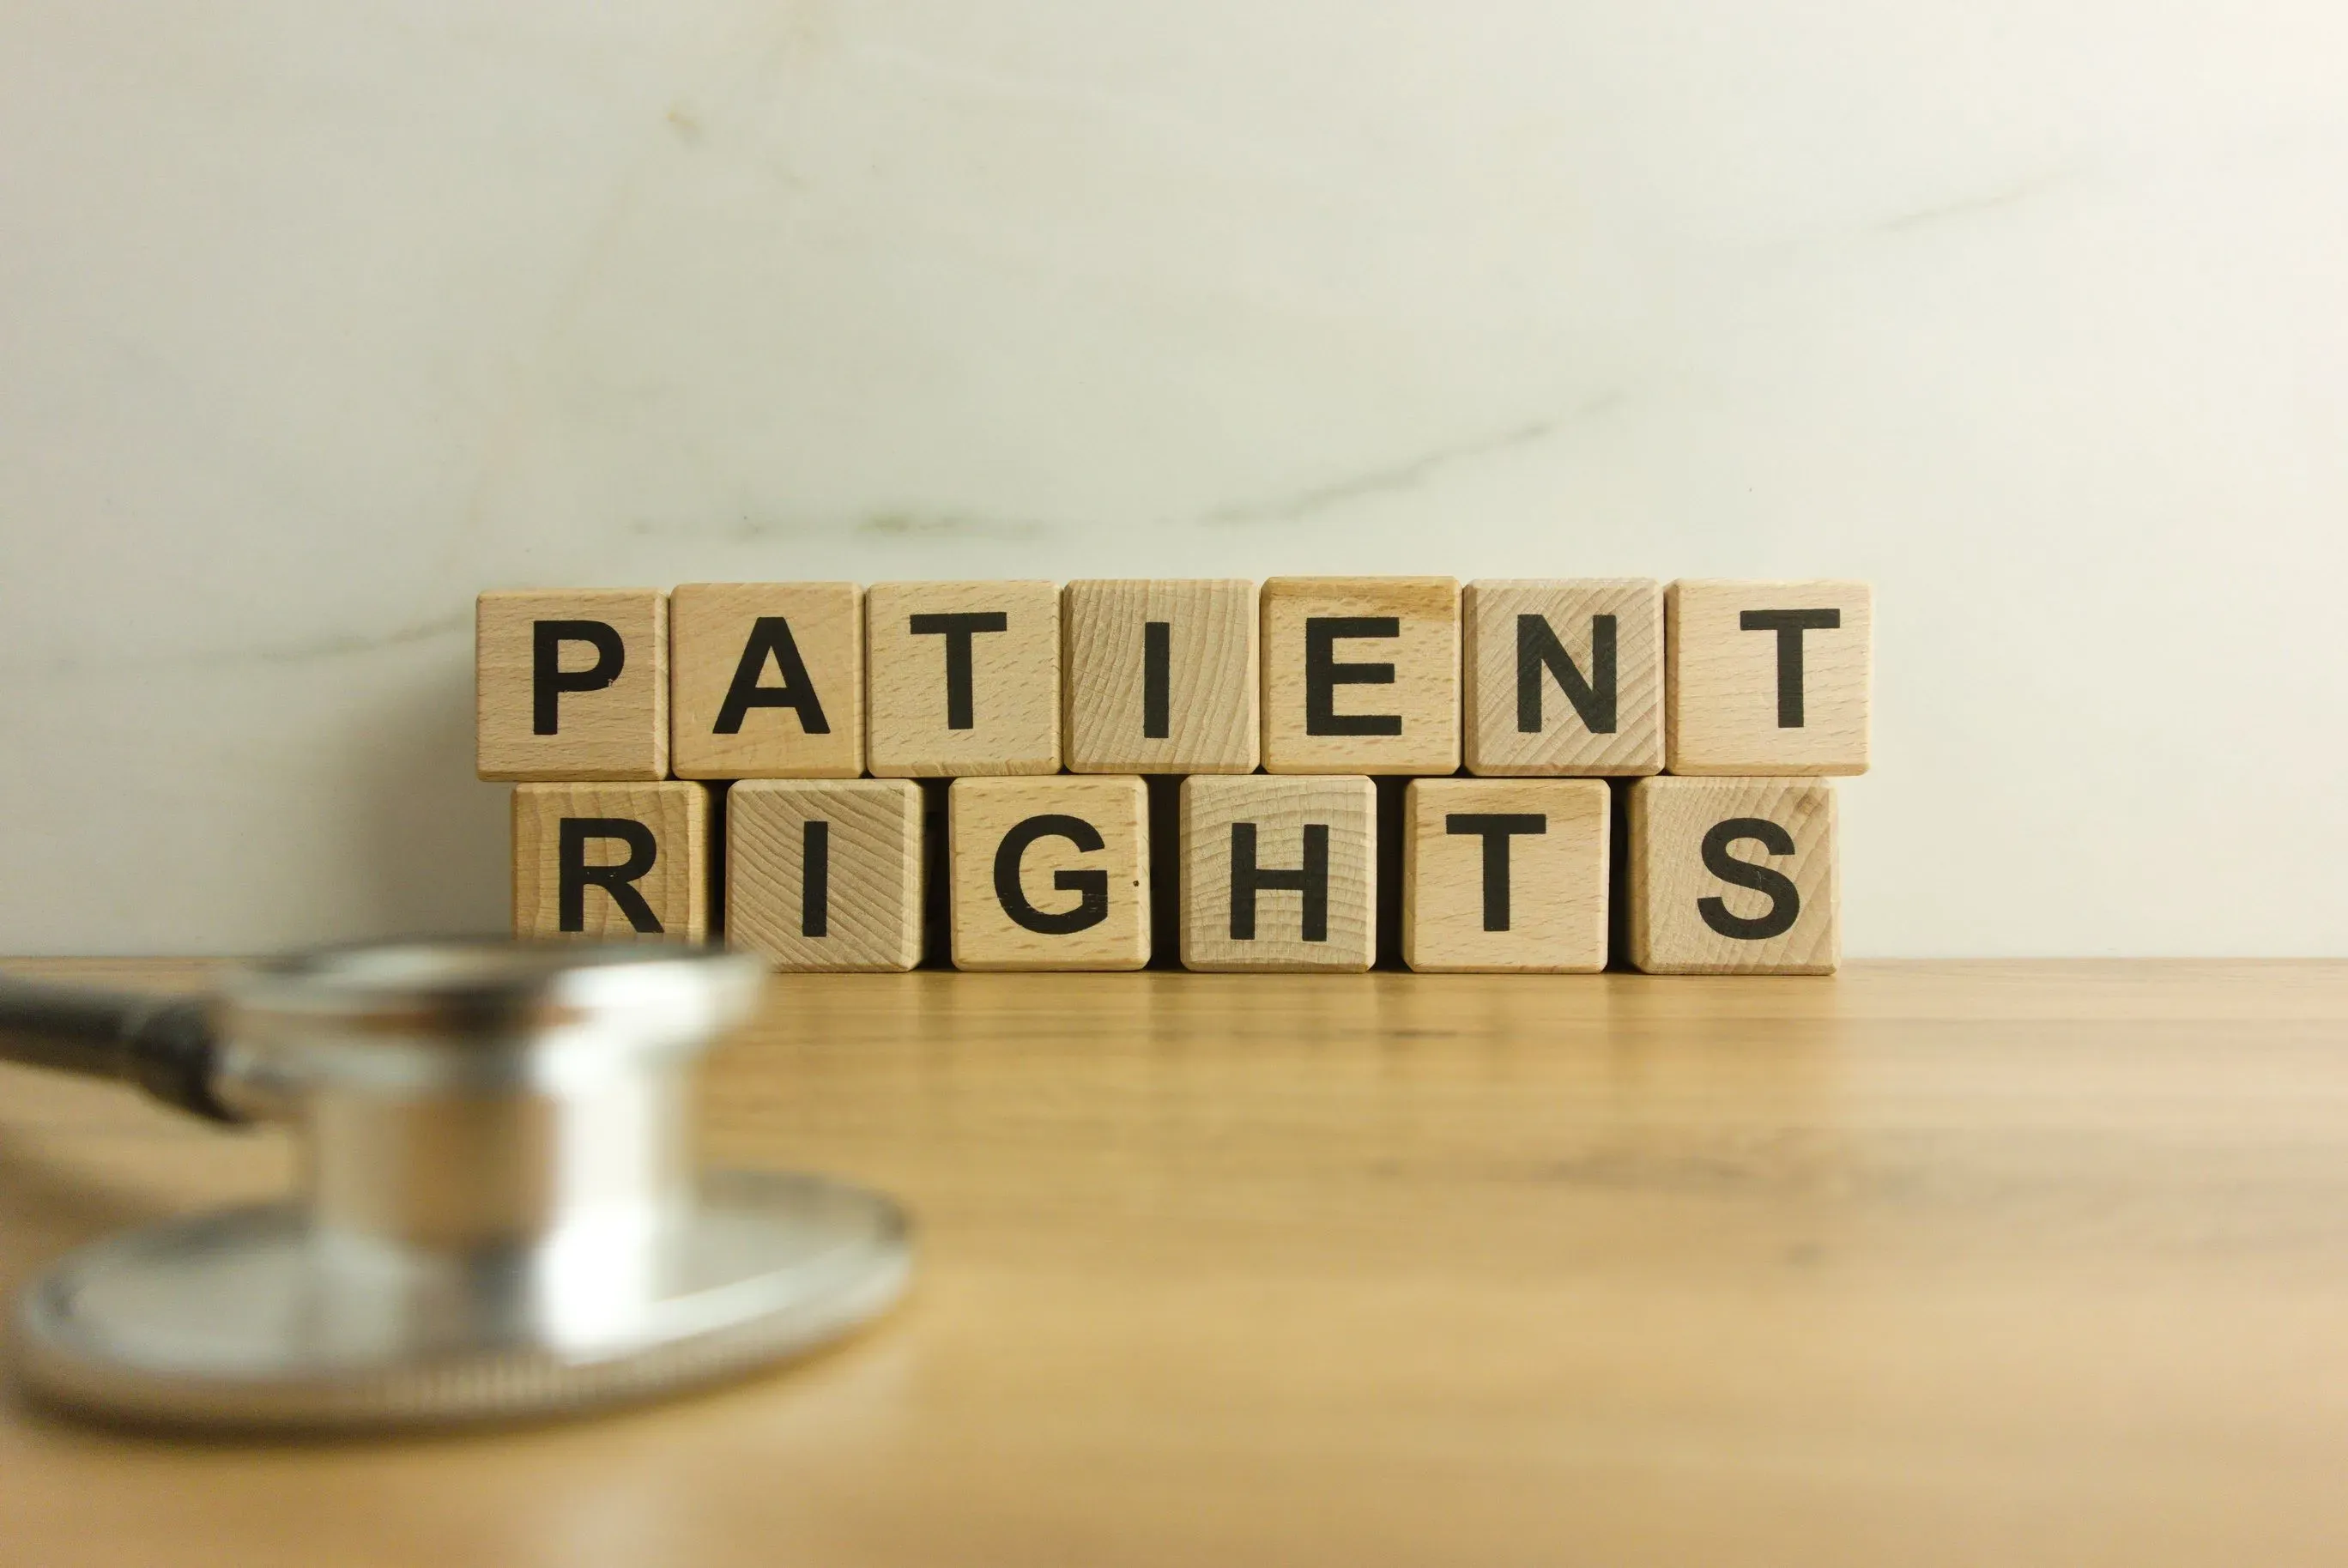 Co pielęgniarka i położna powinna wiedzieć na temat prawa pacjenta do przechowywania rzeczy wartościowych w depozycie